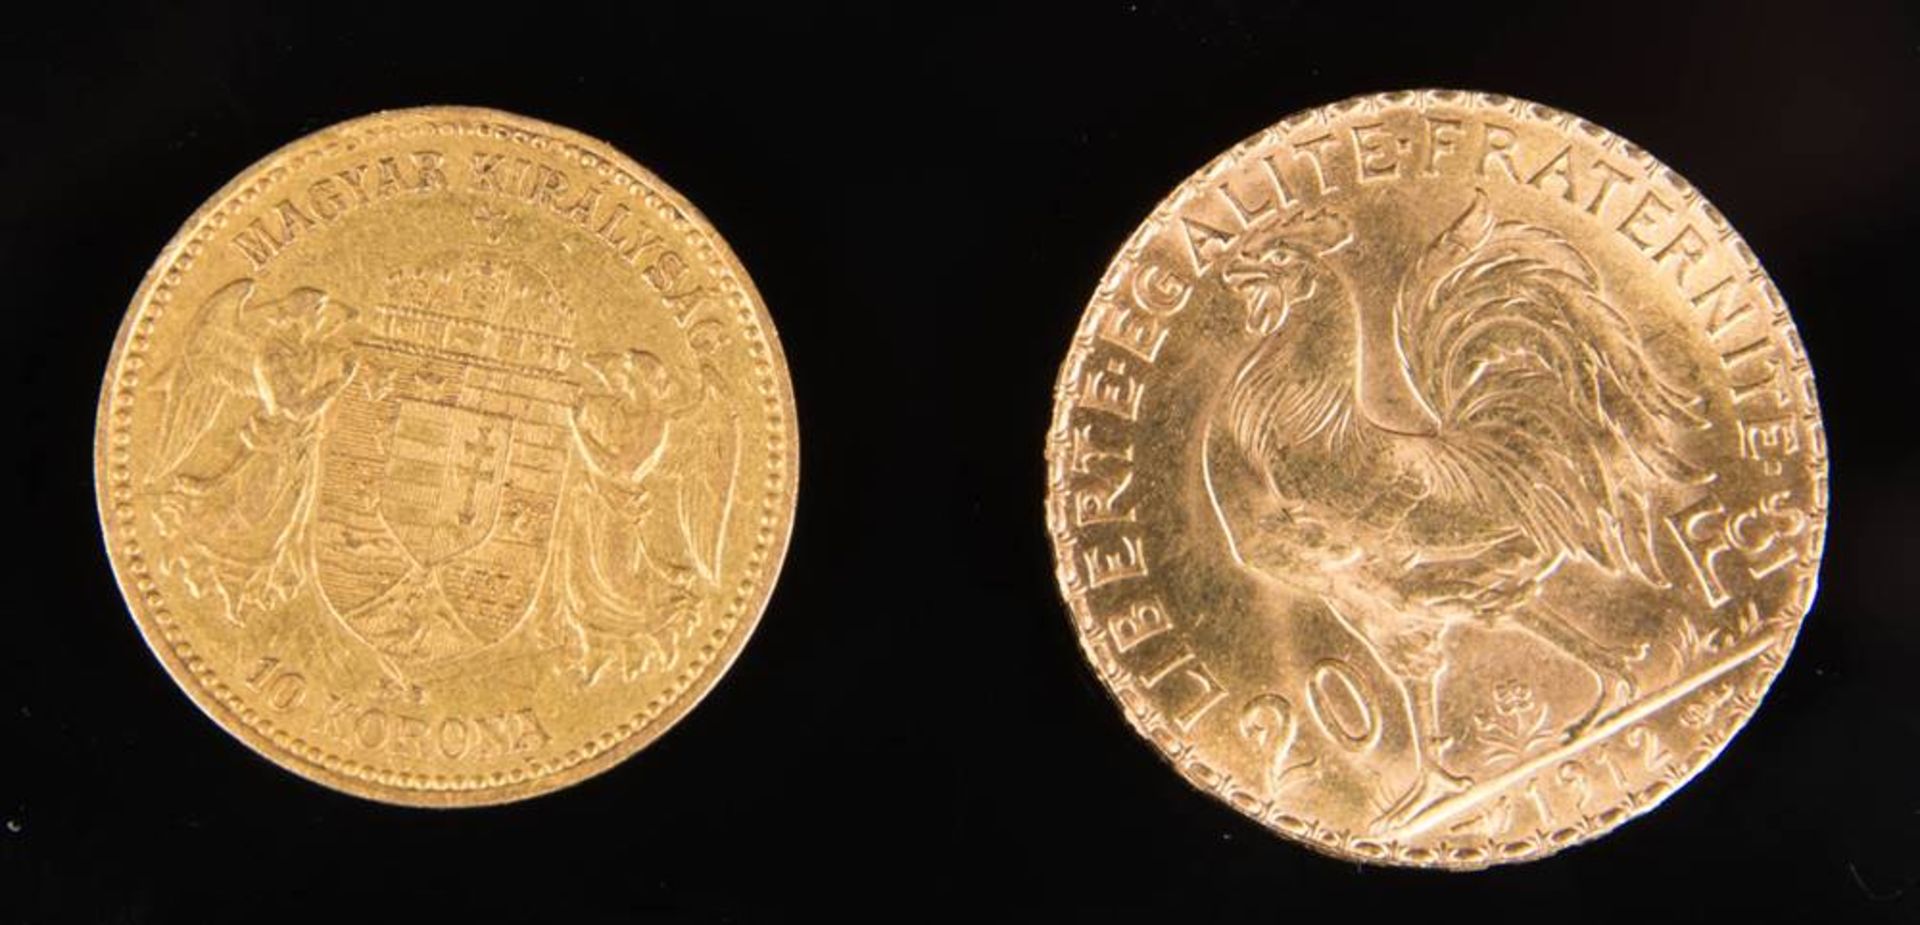 Zwei Goldmünzen Frankreich, Ungarn, 8,85g Feingold. - Bild 2 aus 2